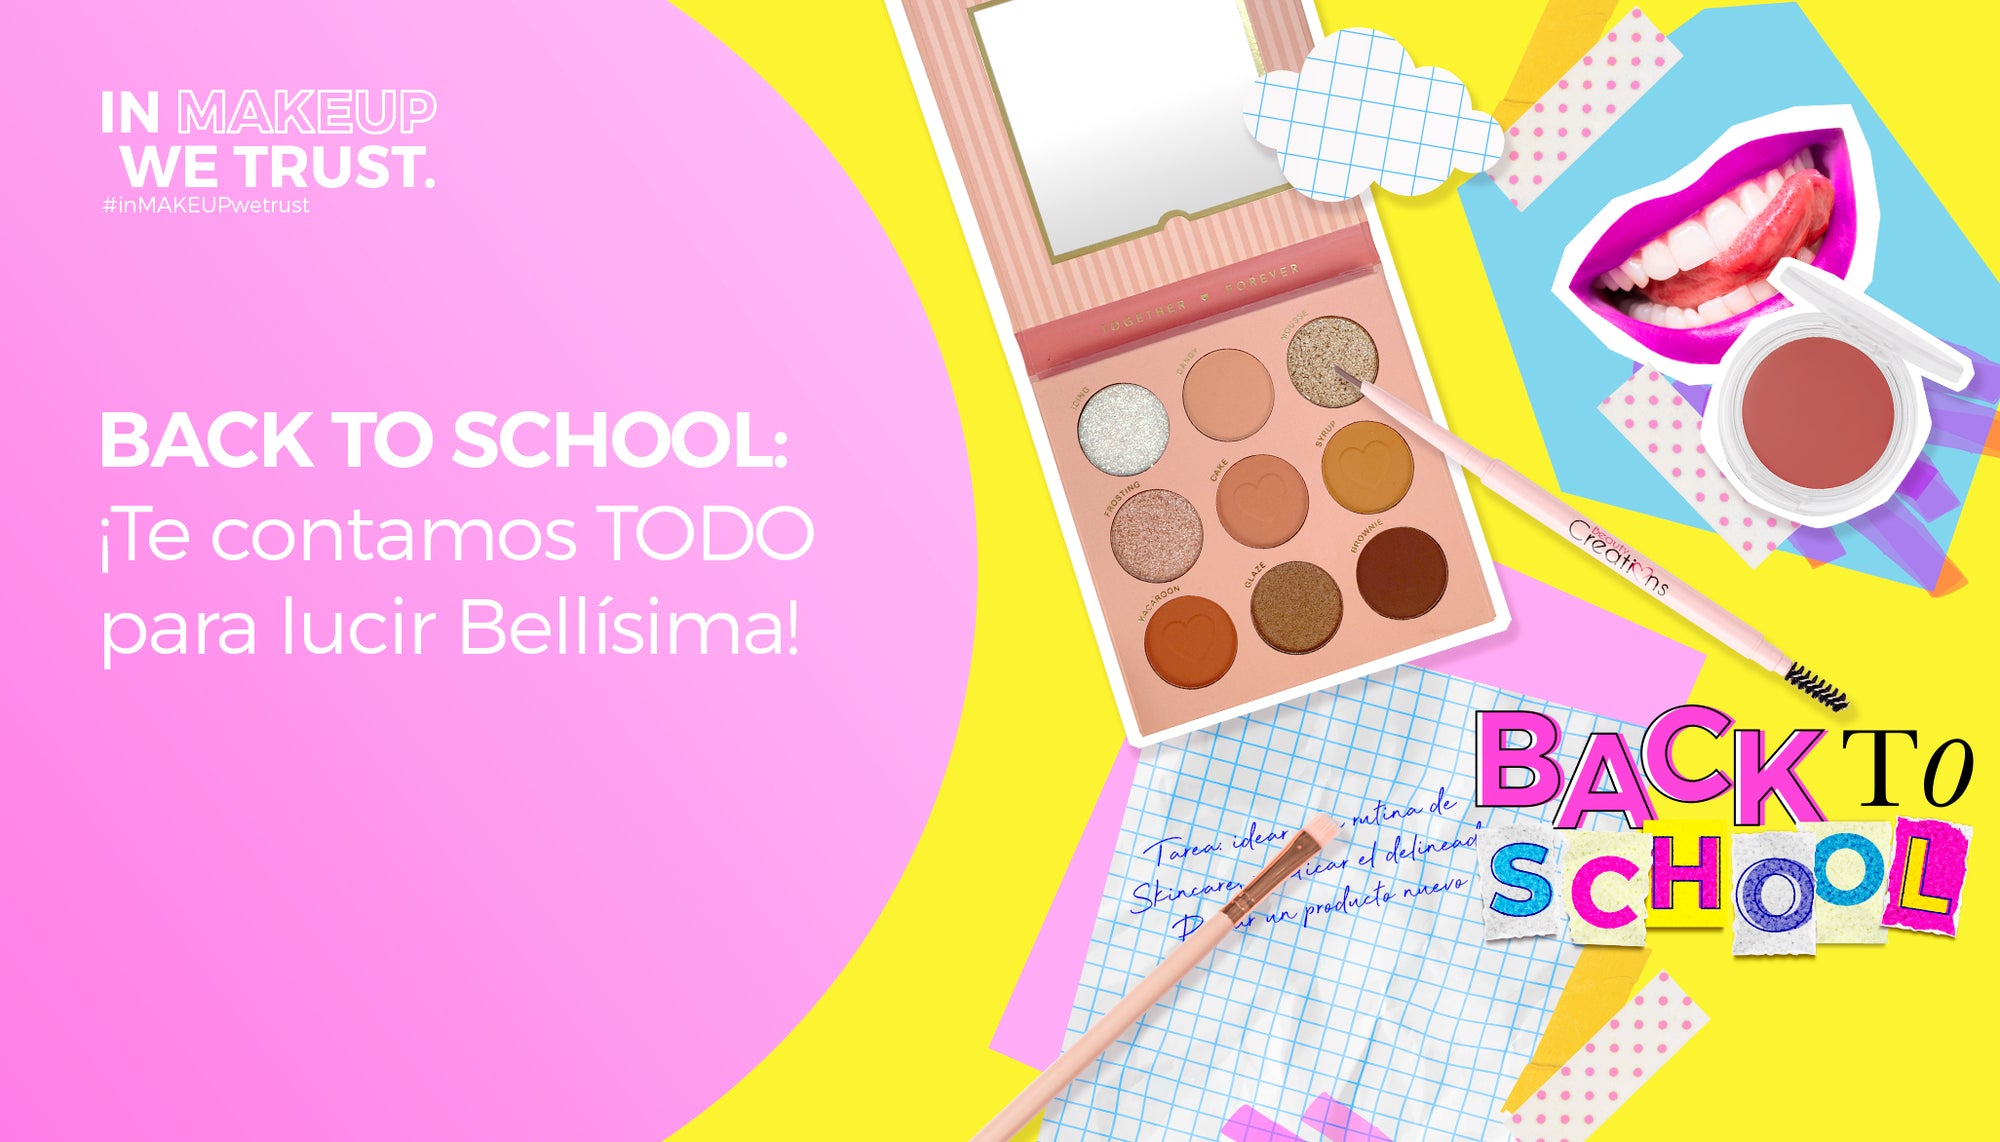 Back to school: ¡Te contamos TODO para lucir Bellísima!